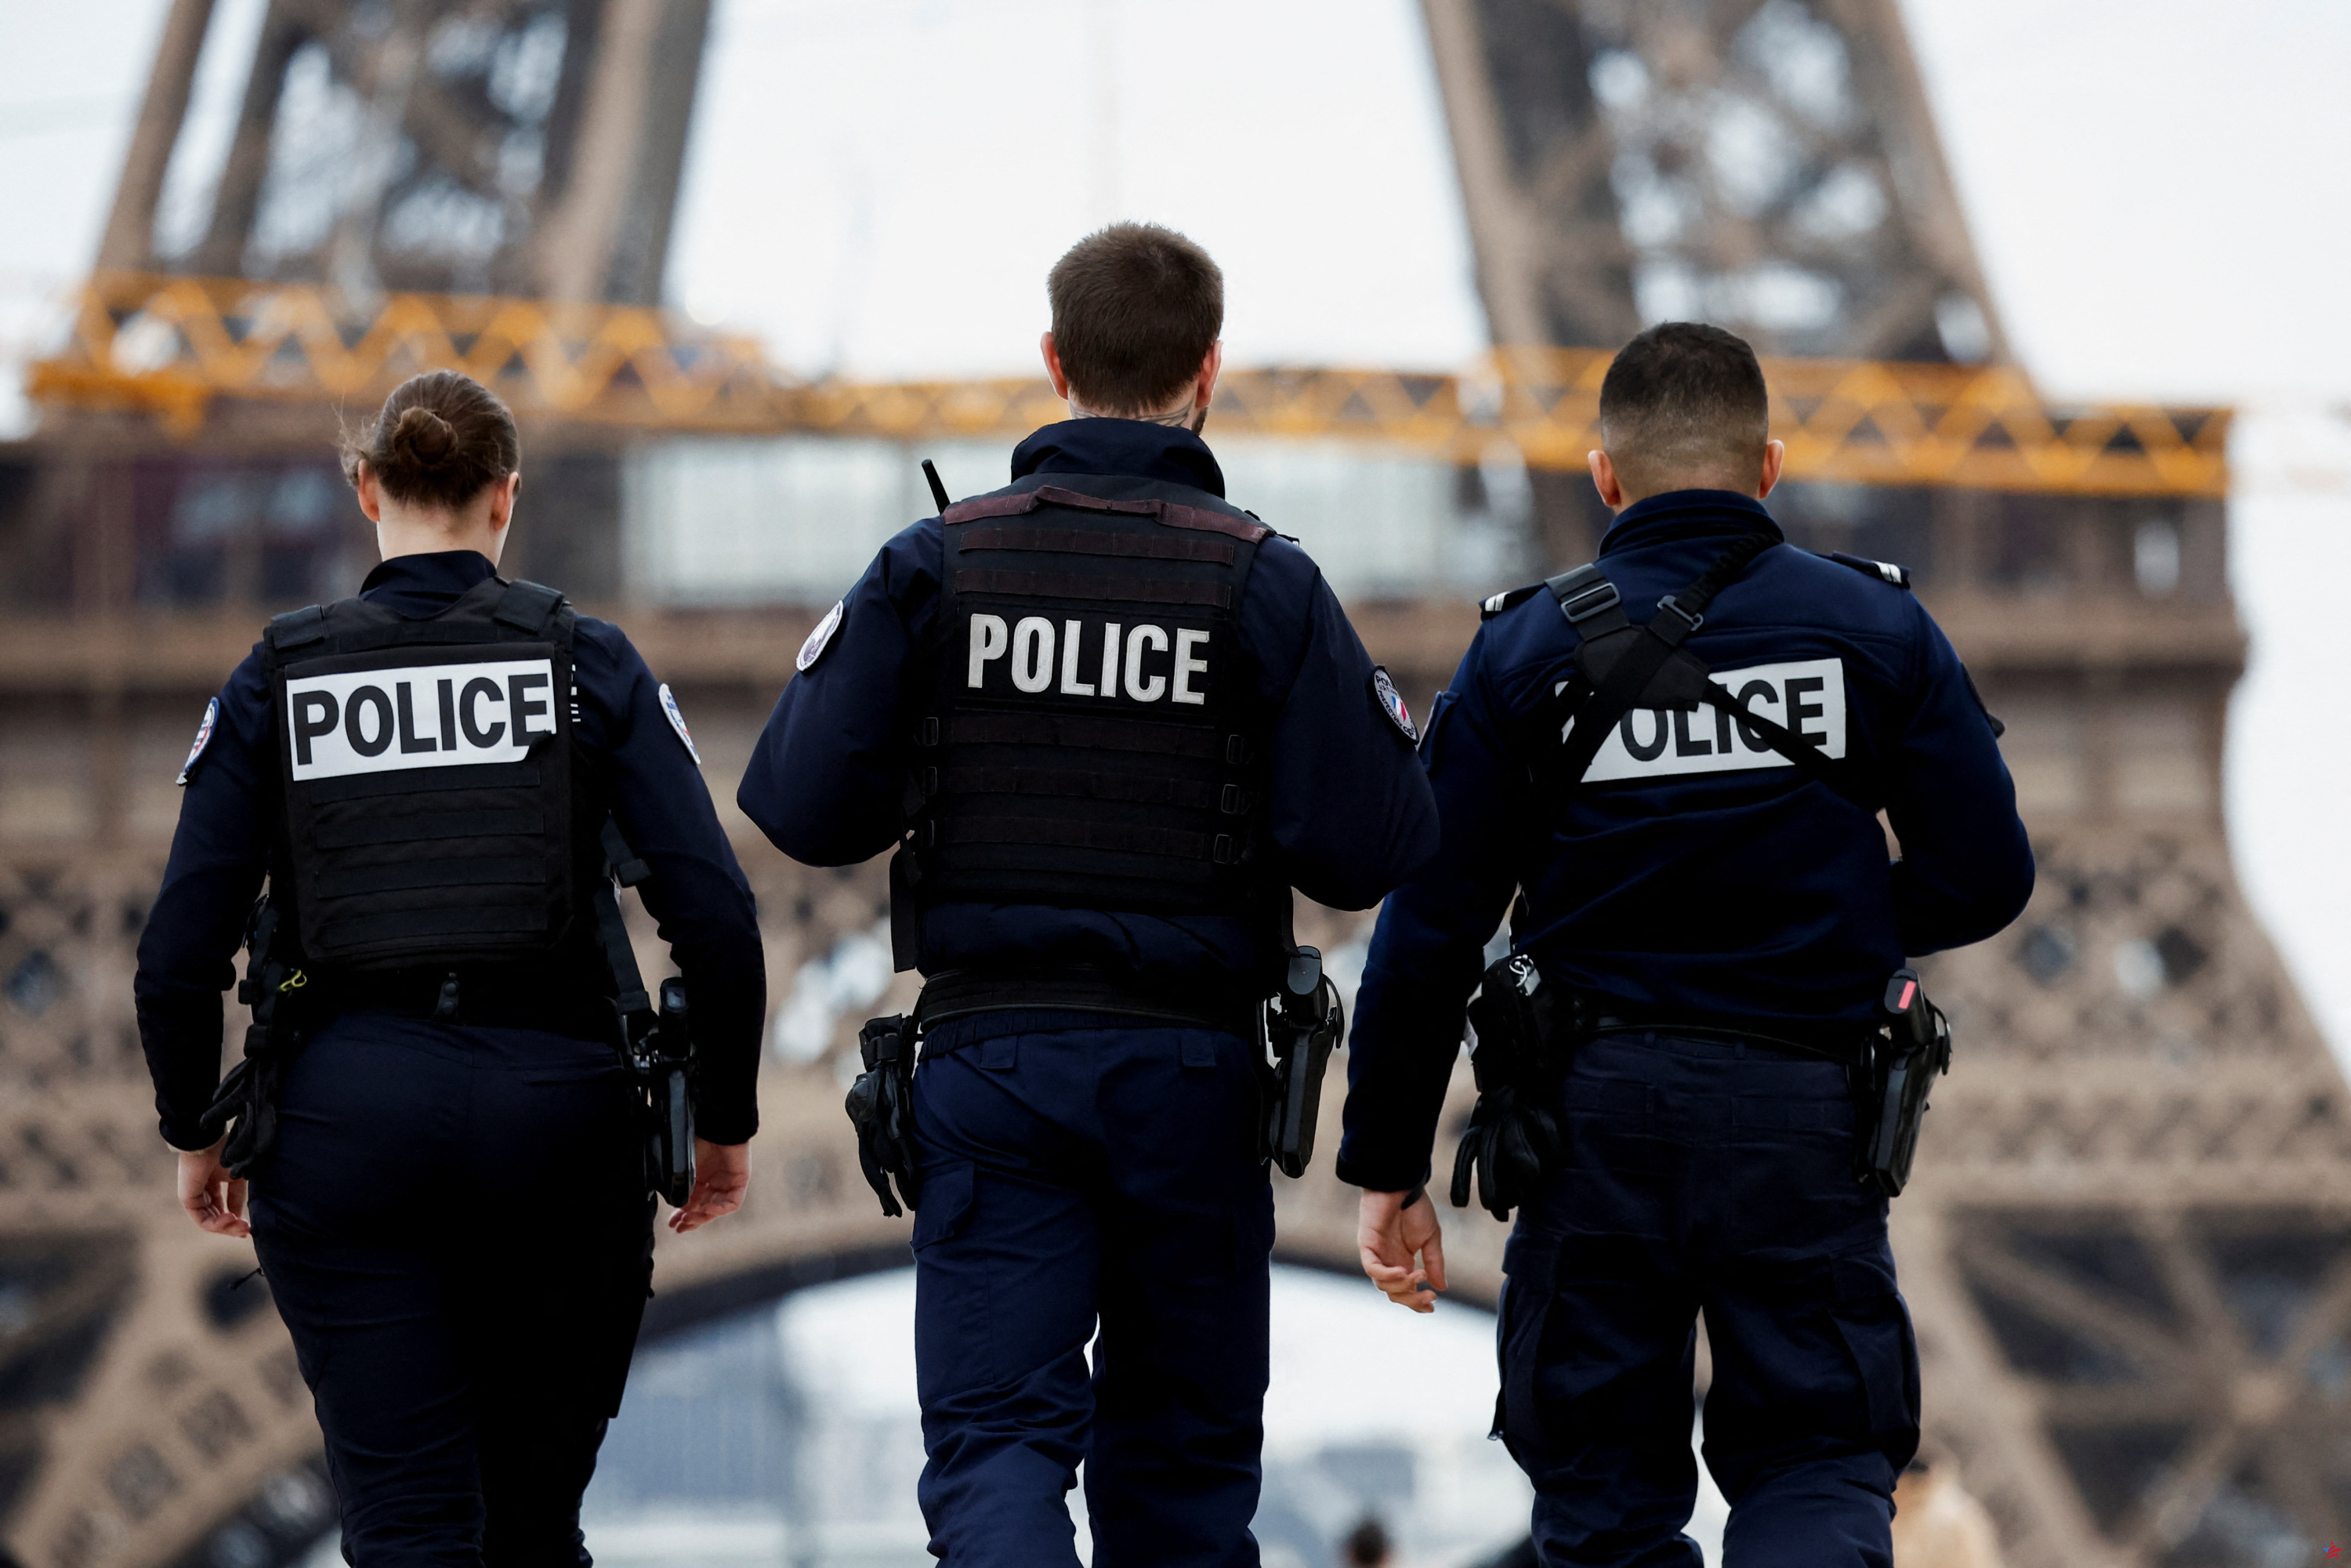 París: un individuo acusado y encarcelado por dos violaciones, incluida la de una mujer embarazada